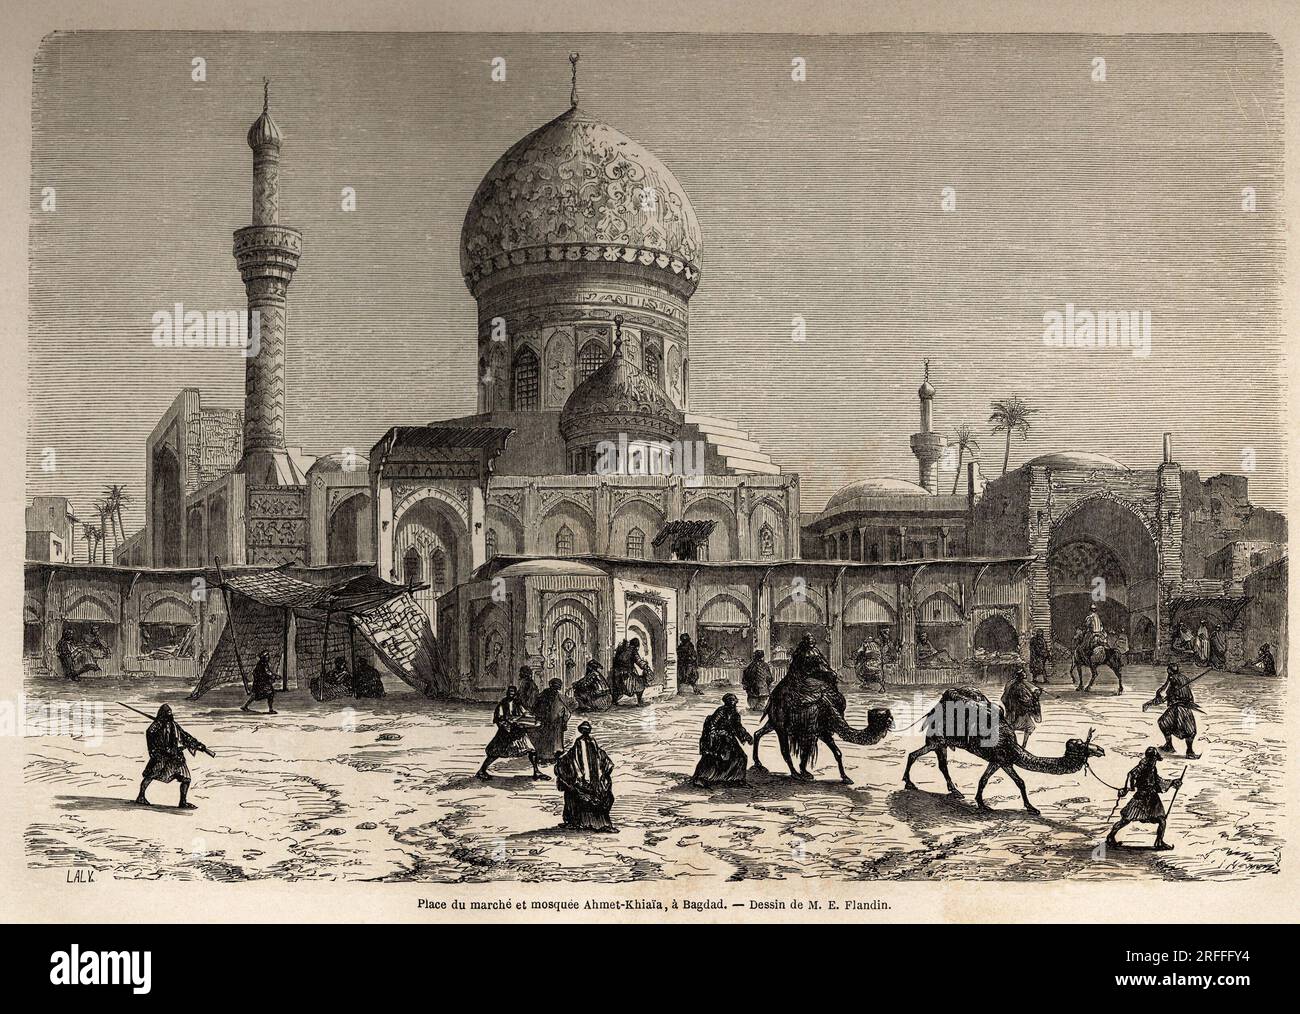 La place du marche et la mosquee Ahmet Khiaia, a Bagdad, dessin de Eugene Flandin (1809-1876), pour illustrer son voyage en Mesopotamie, en 1840-1842. Gravure in 'Le tour du monde' 1861. Stock Photo